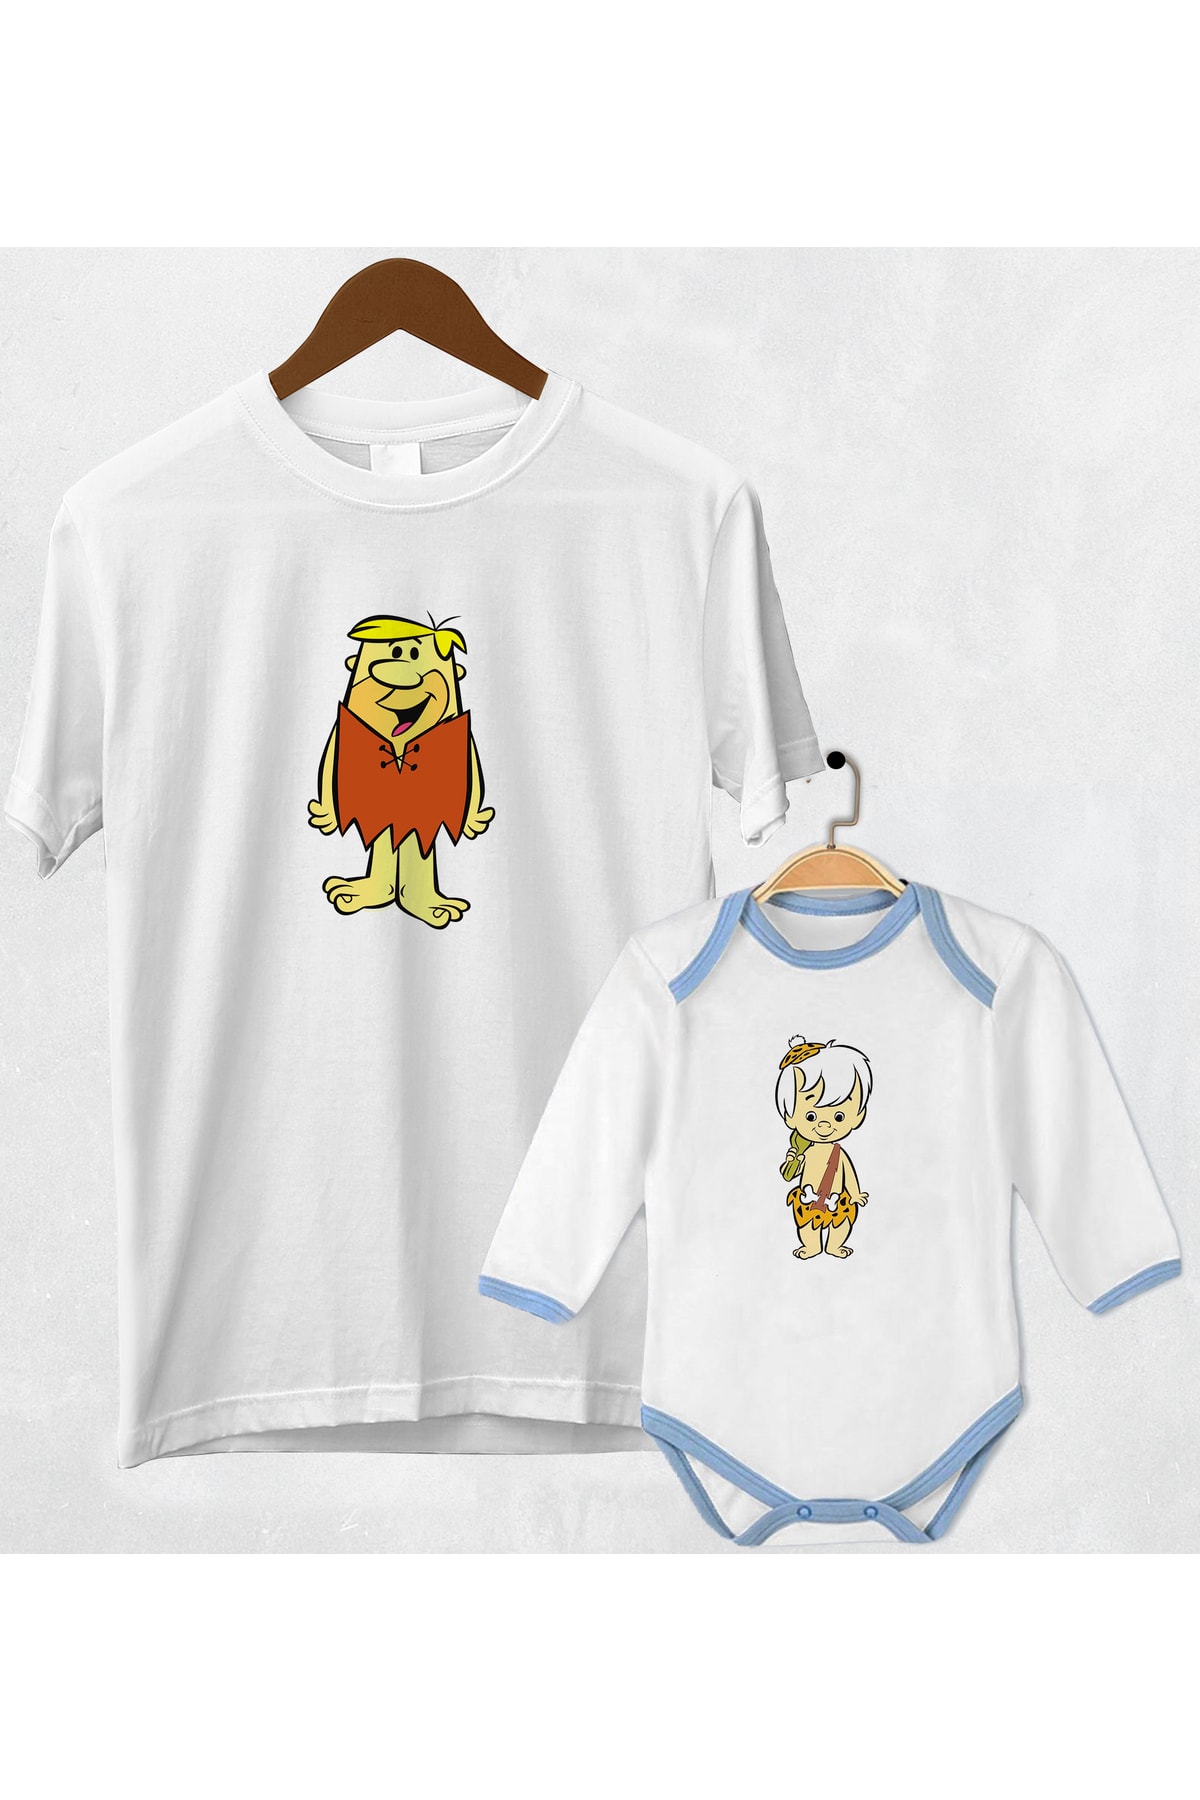 Coutoo Barnie Ve Babam Baskılı Baba Oğul T-shirt Zıbın Kombin(fiyat Tek Adet Içindir)